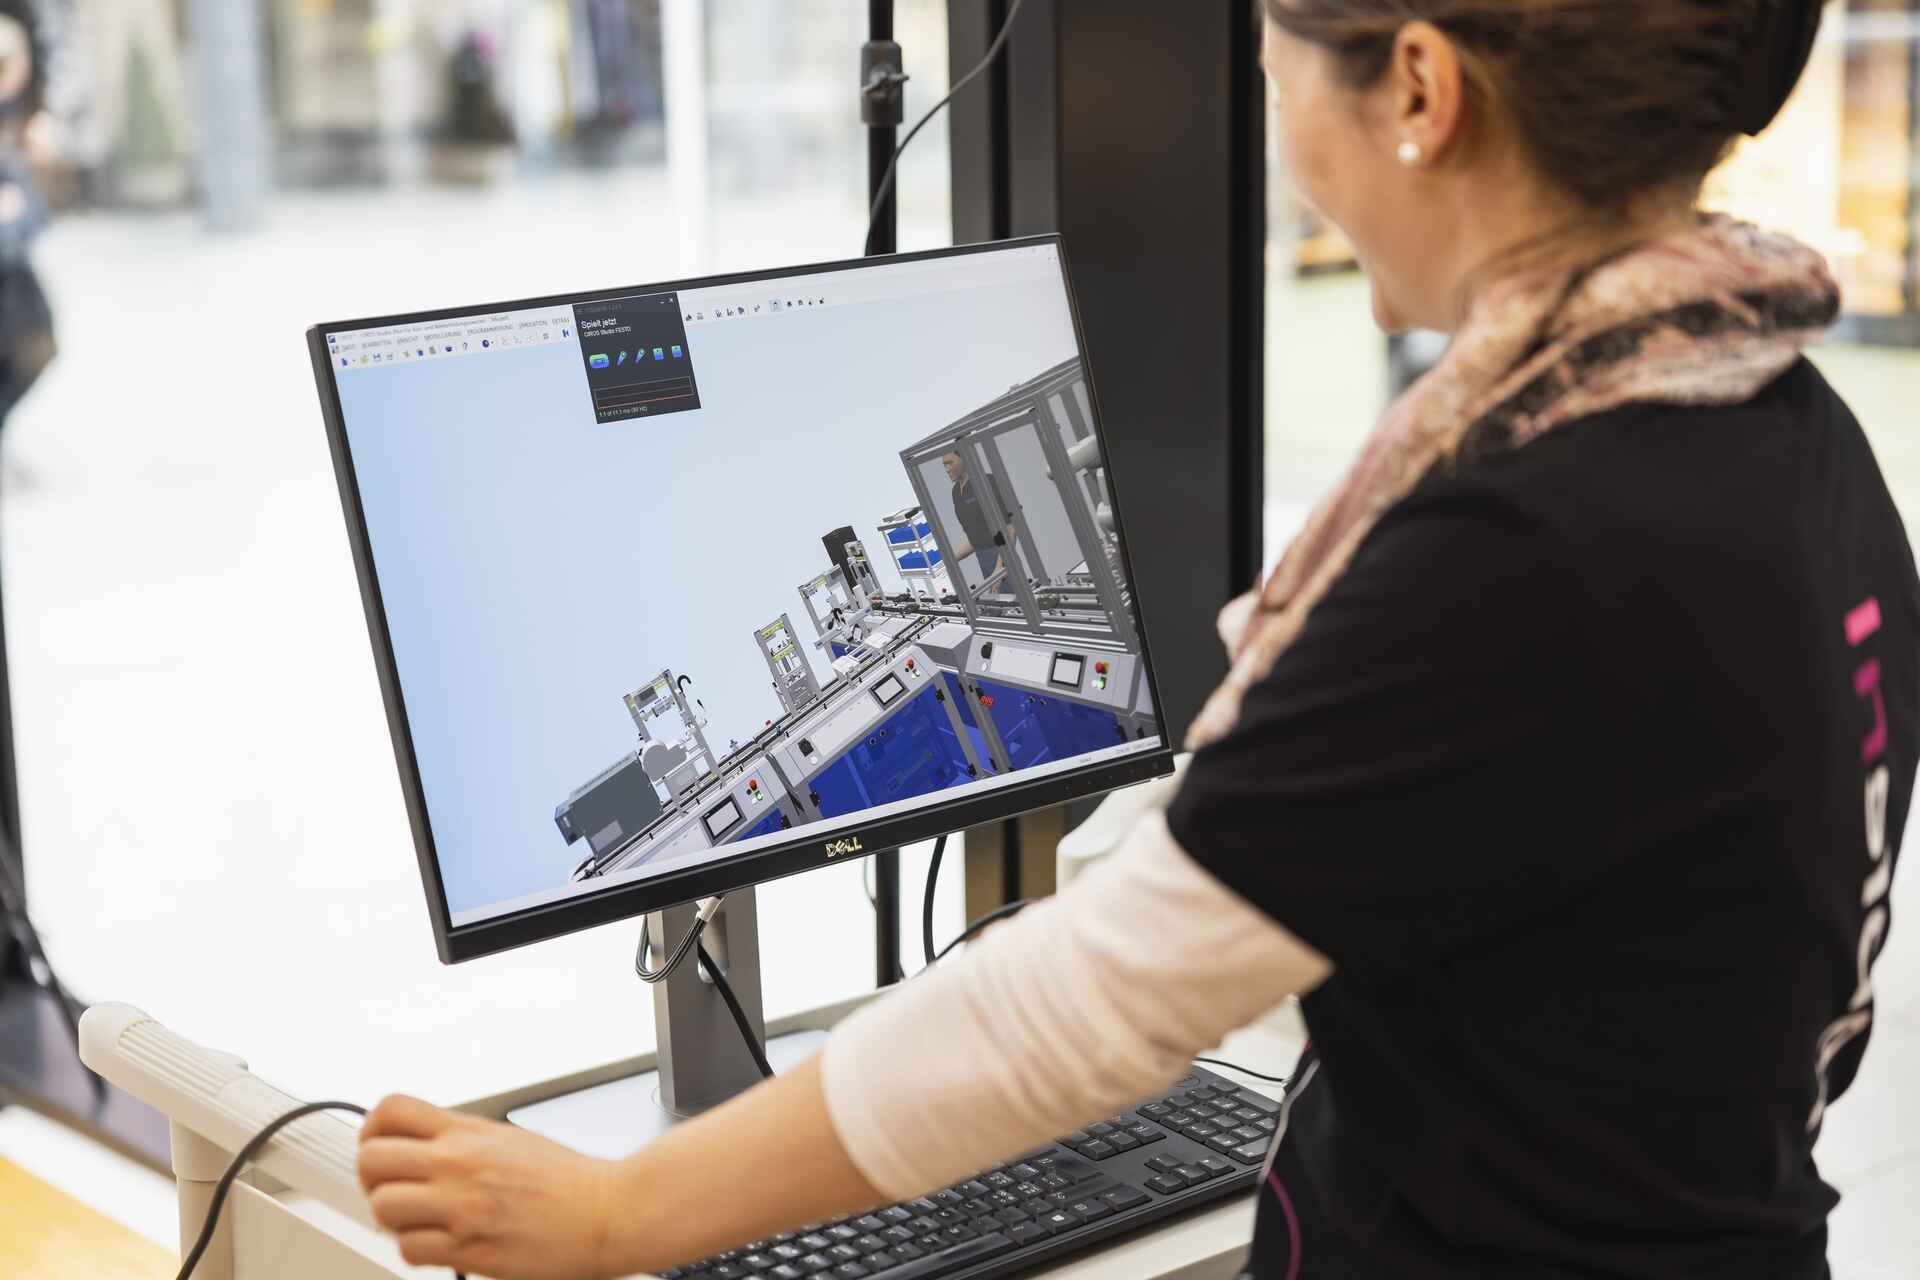 "Digitaltag Vaduz" u mirëprit nga Kunstmuseum i kryeqytetit të Principatës së Lihtenshtajnit të shtunën, 15 tetor 2022.